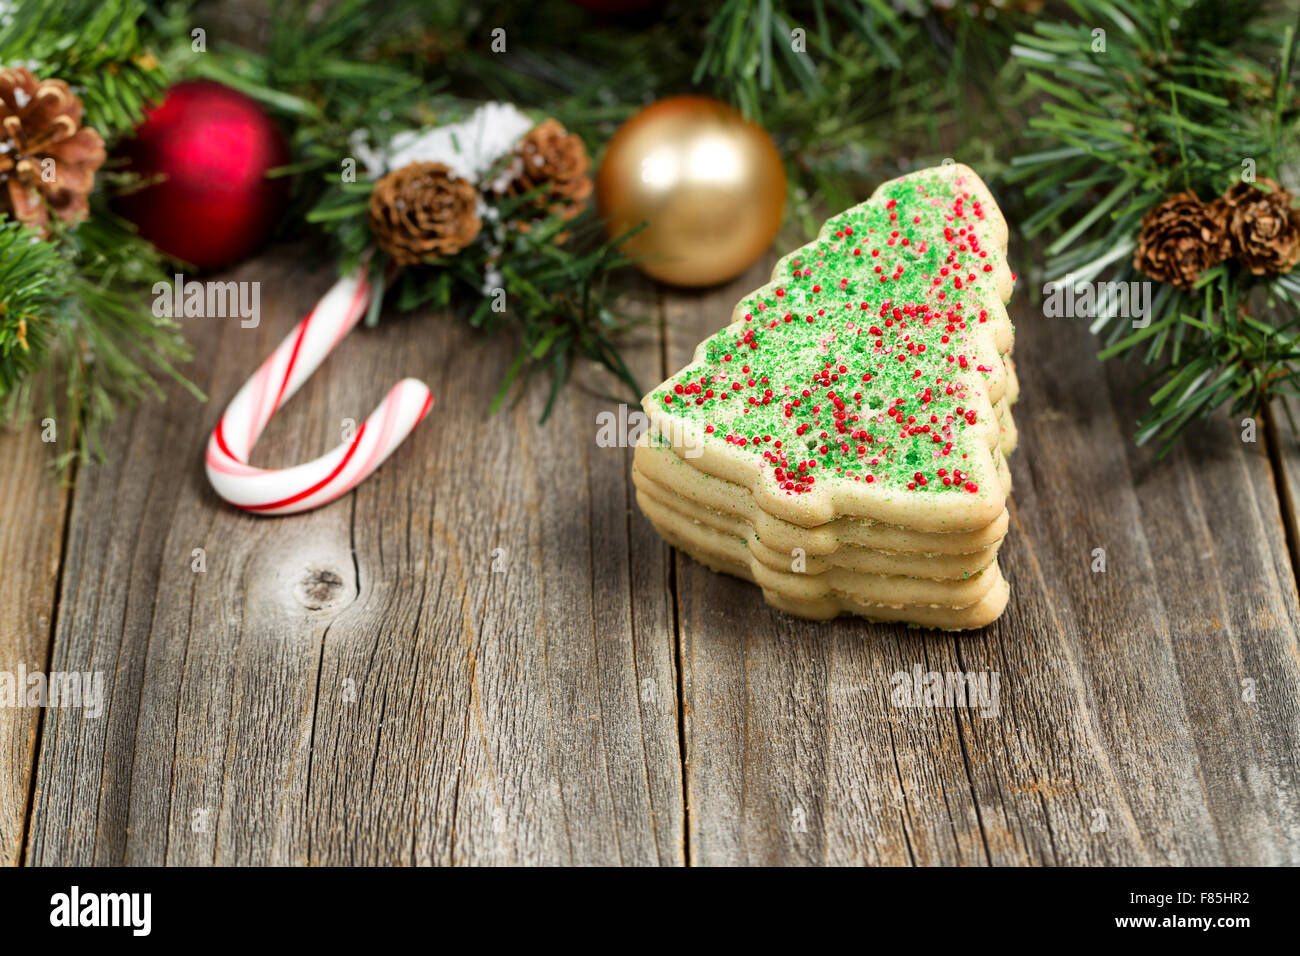 Vue de près avec les cookies en forme d'arbre des branches de conifères, pommes de pin, de neige et ornements sur bois rustique. Selective focus on Banque D'Images